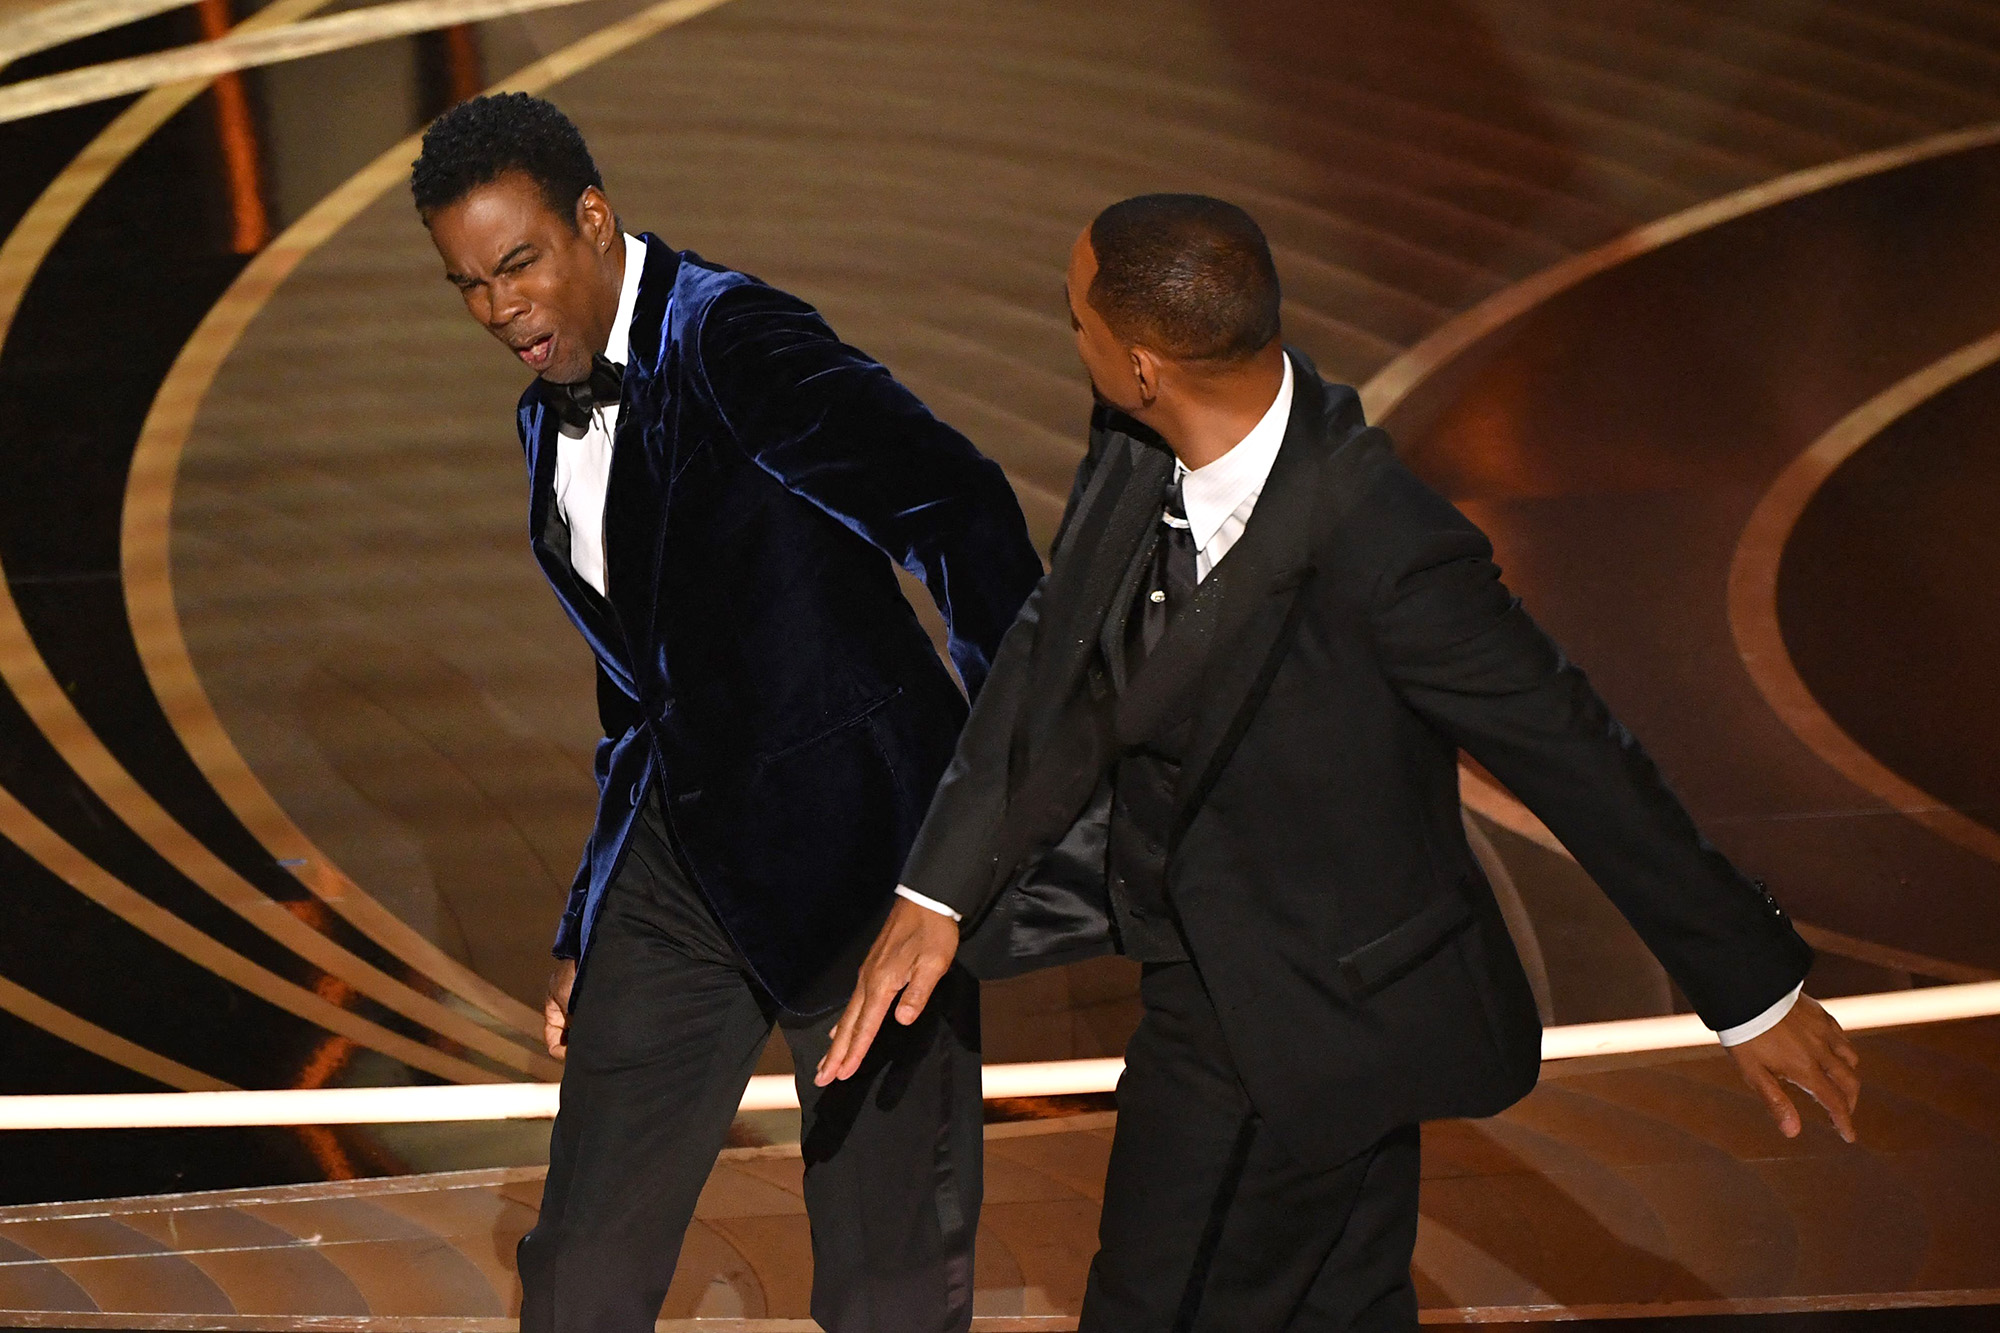 Trao giải Tony &quot;cấm bạo lực&quot; sau sự cố của Will Smith tại Oscar 2022 - Ảnh 1.